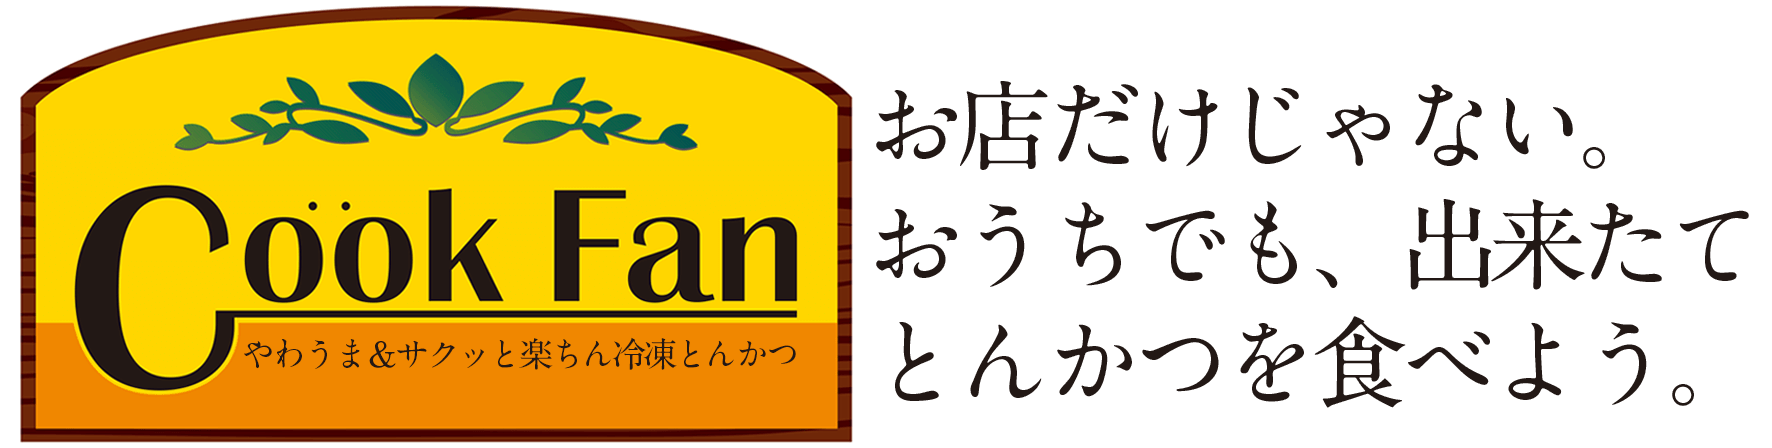 クックファン【CookFan】